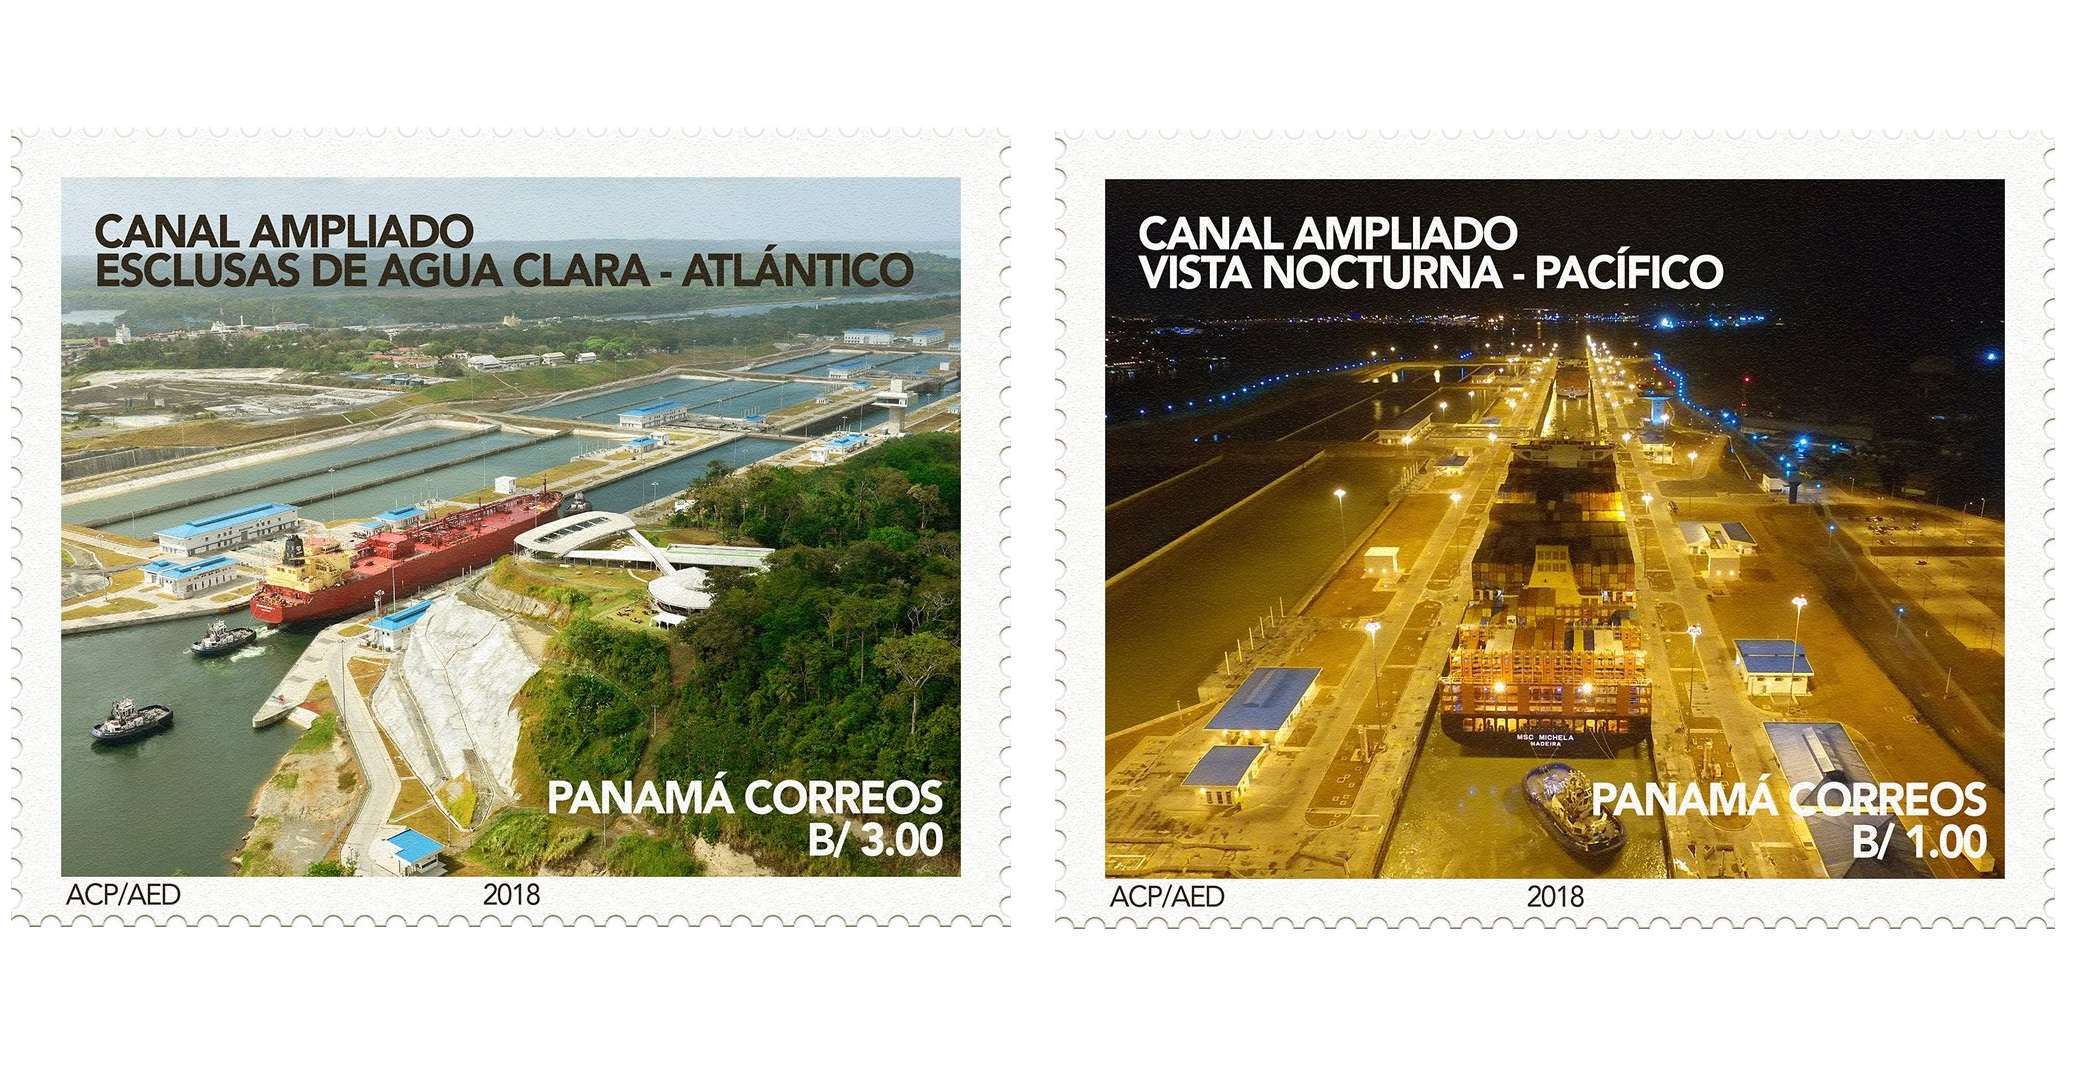 Emitirán un total de 120.000 sellos conmemorativos de la ampliación de la vía interoceánica. @canaldepanama  